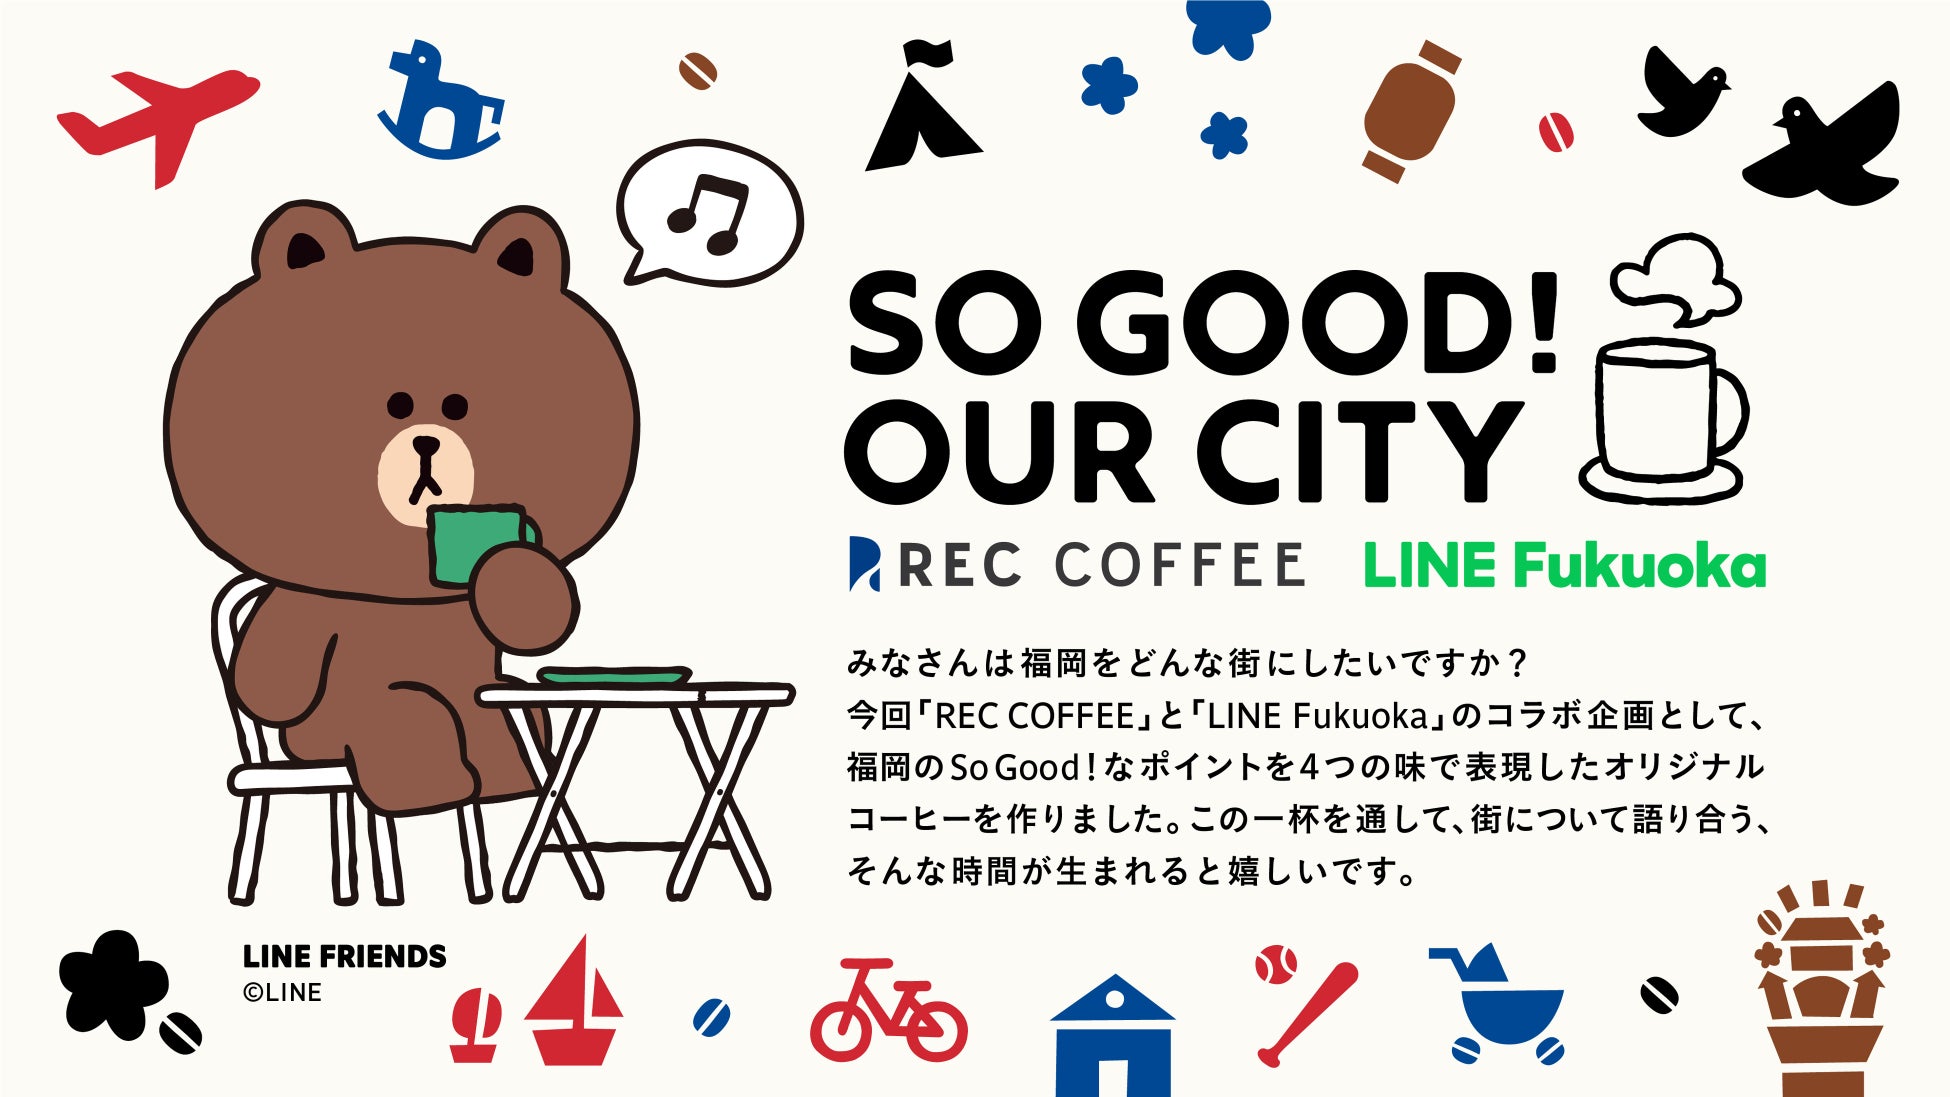 【福岡発】コーヒー×スマートシティのコラボ　REC COFFEEとLINE Fukuokaが一杯のコーヒーから街の未来を思う共同企画を実施　福岡の魅力を表現したオリジナルコーヒーバッグをプレゼント